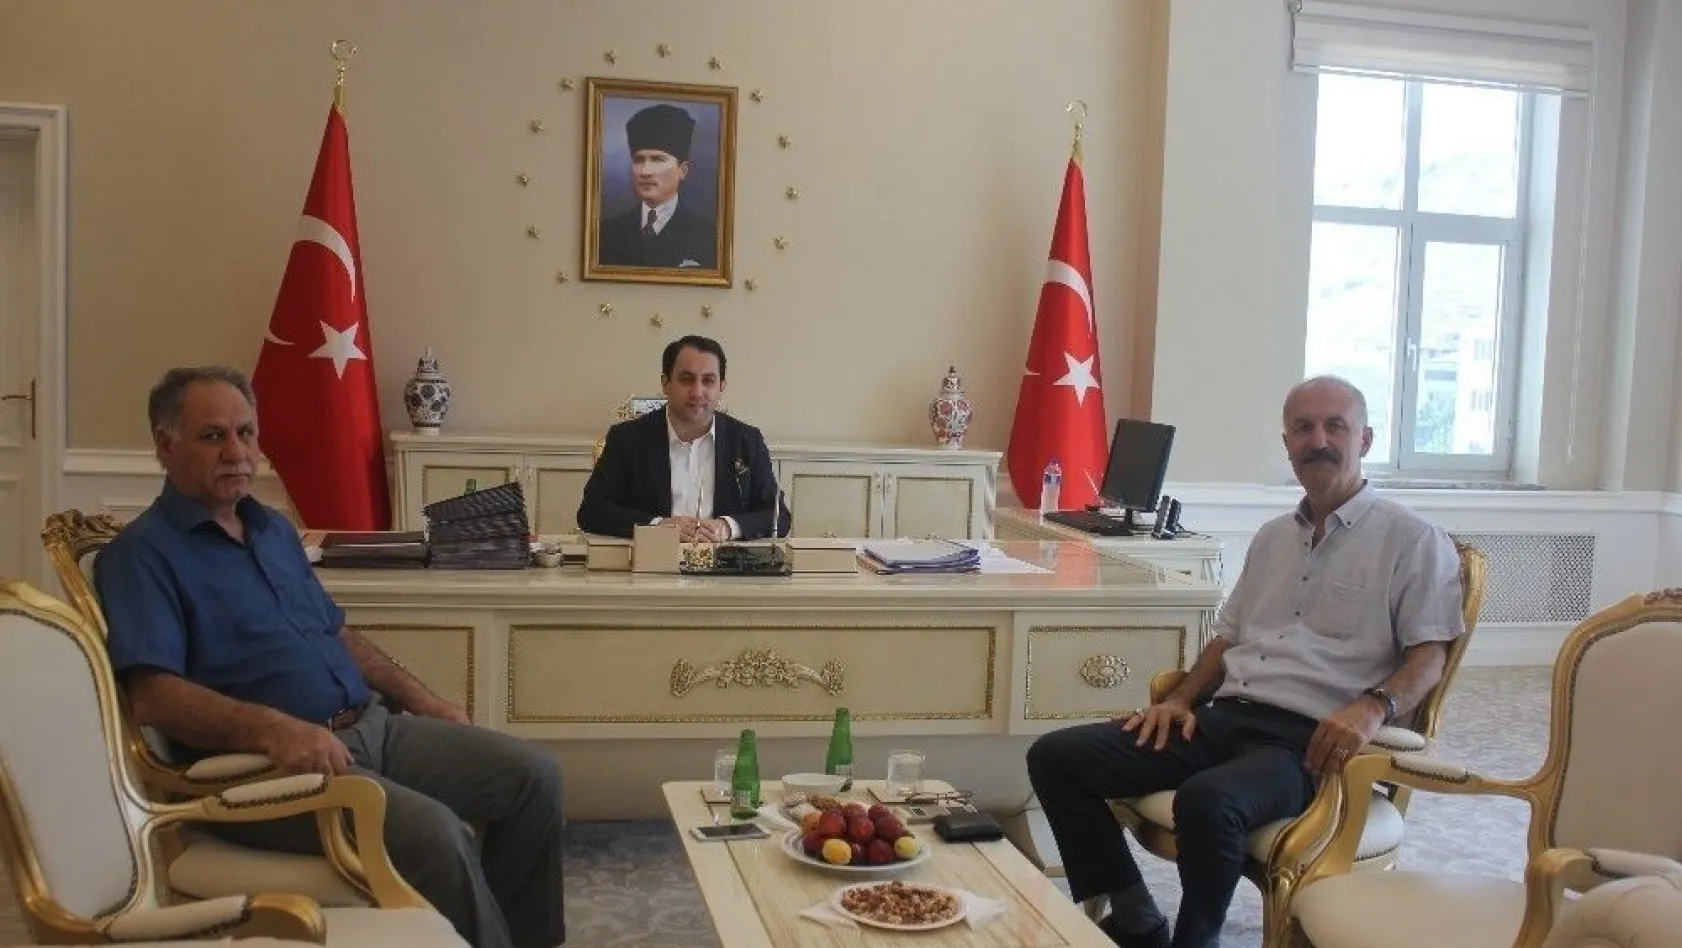 DMO Bölge Müdürü Özbek'ten Kaymakam Zengince'ye ziyaret
